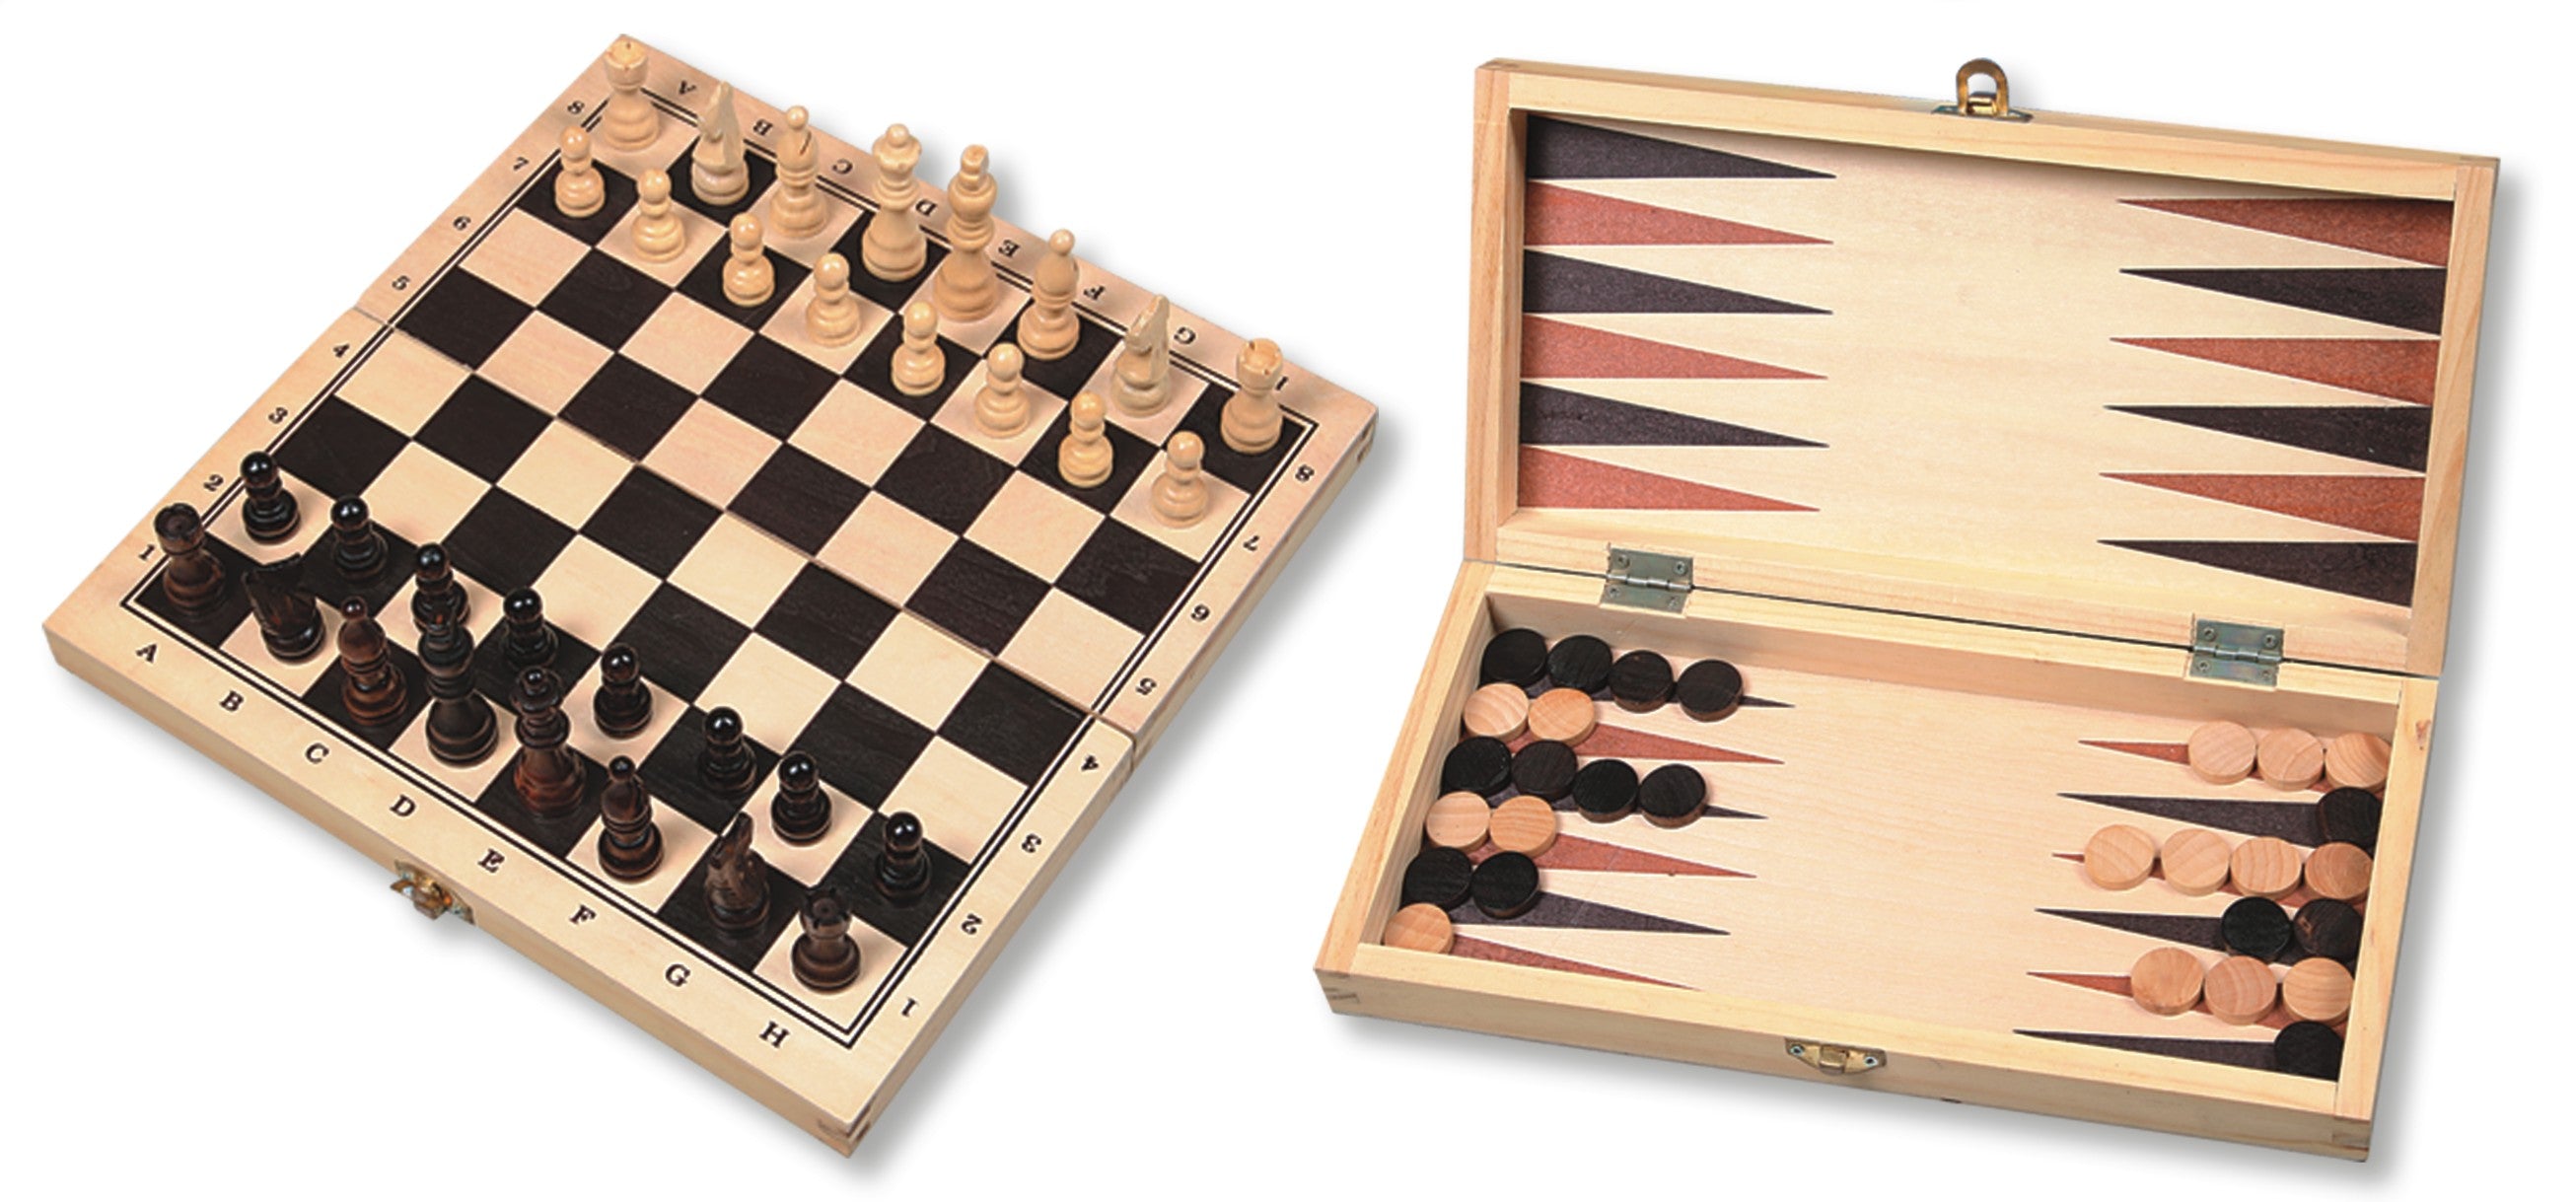 Schach- / Backgammon- / Dame-Faltkassette